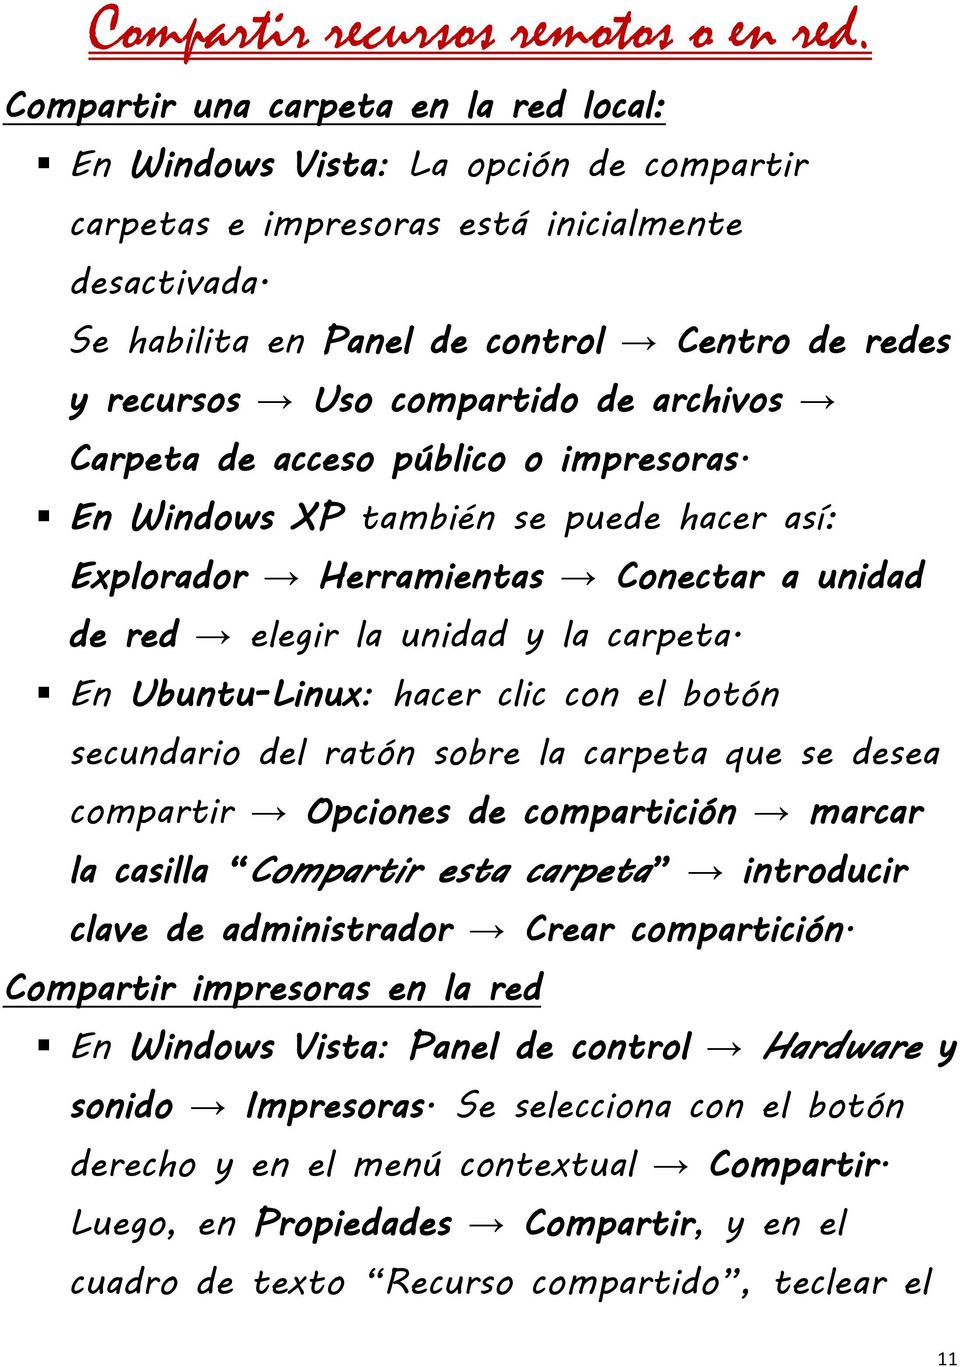 En Windows XP también se puede hacer así: Explorador Herramientas Conectar a unidad de red elegir la unidad y la carpeta.